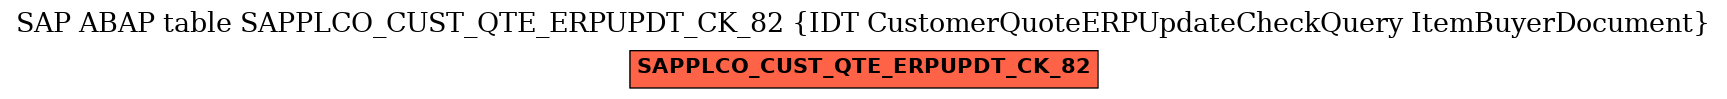 E-R Diagram for table SAPPLCO_CUST_QTE_ERPUPDT_CK_82 (IDT CustomerQuoteERPUpdateCheckQuery ItemBuyerDocument)